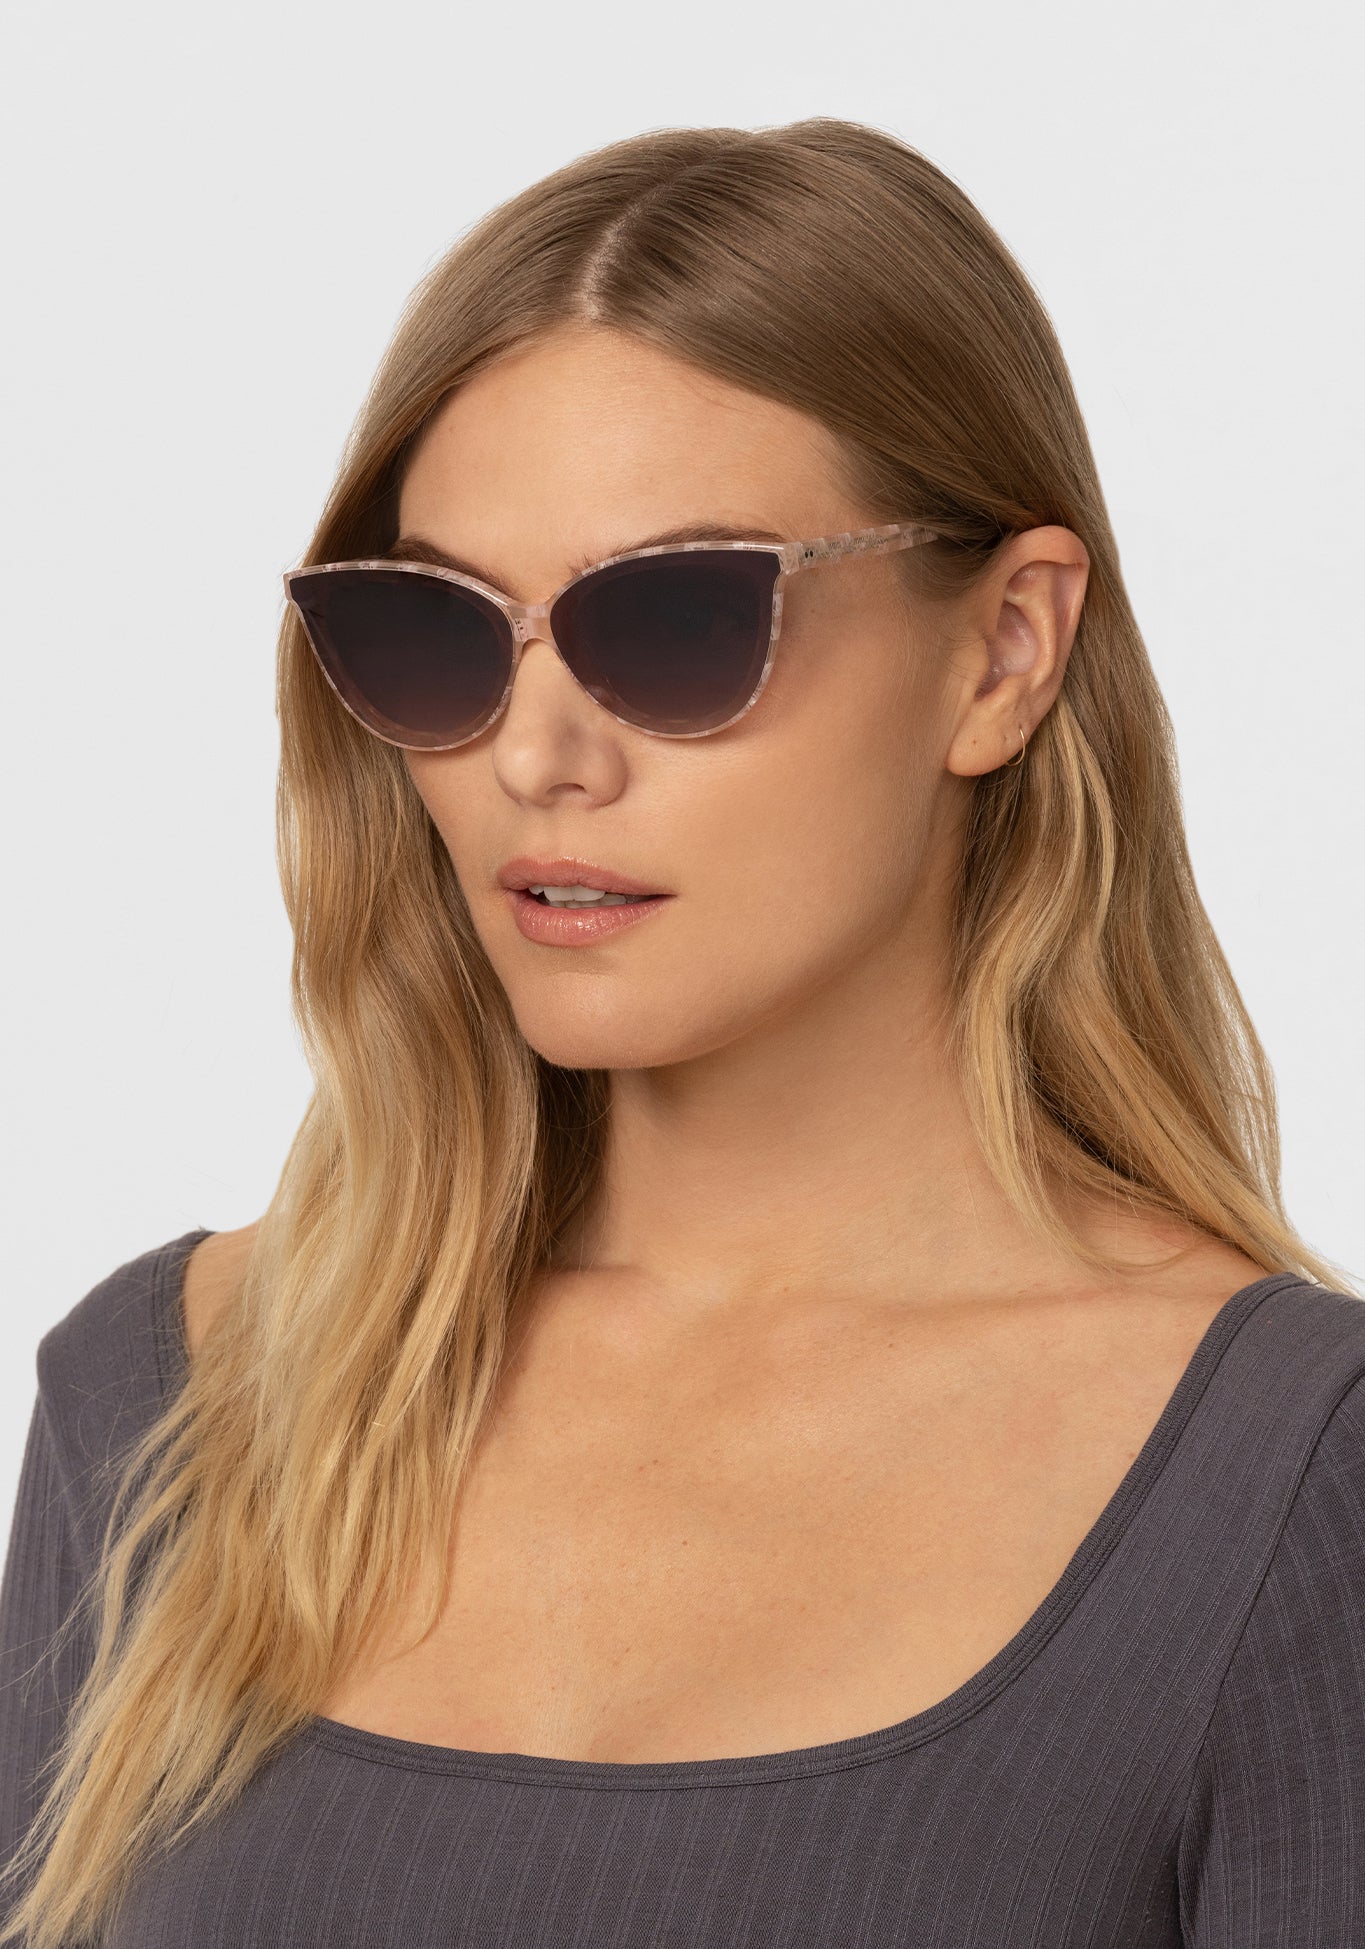 KREWE - MONROE NYLON | Plaid Mirrored handcrafted, luxury pink checkered cateye sunglasses womens model | Model: Maritza